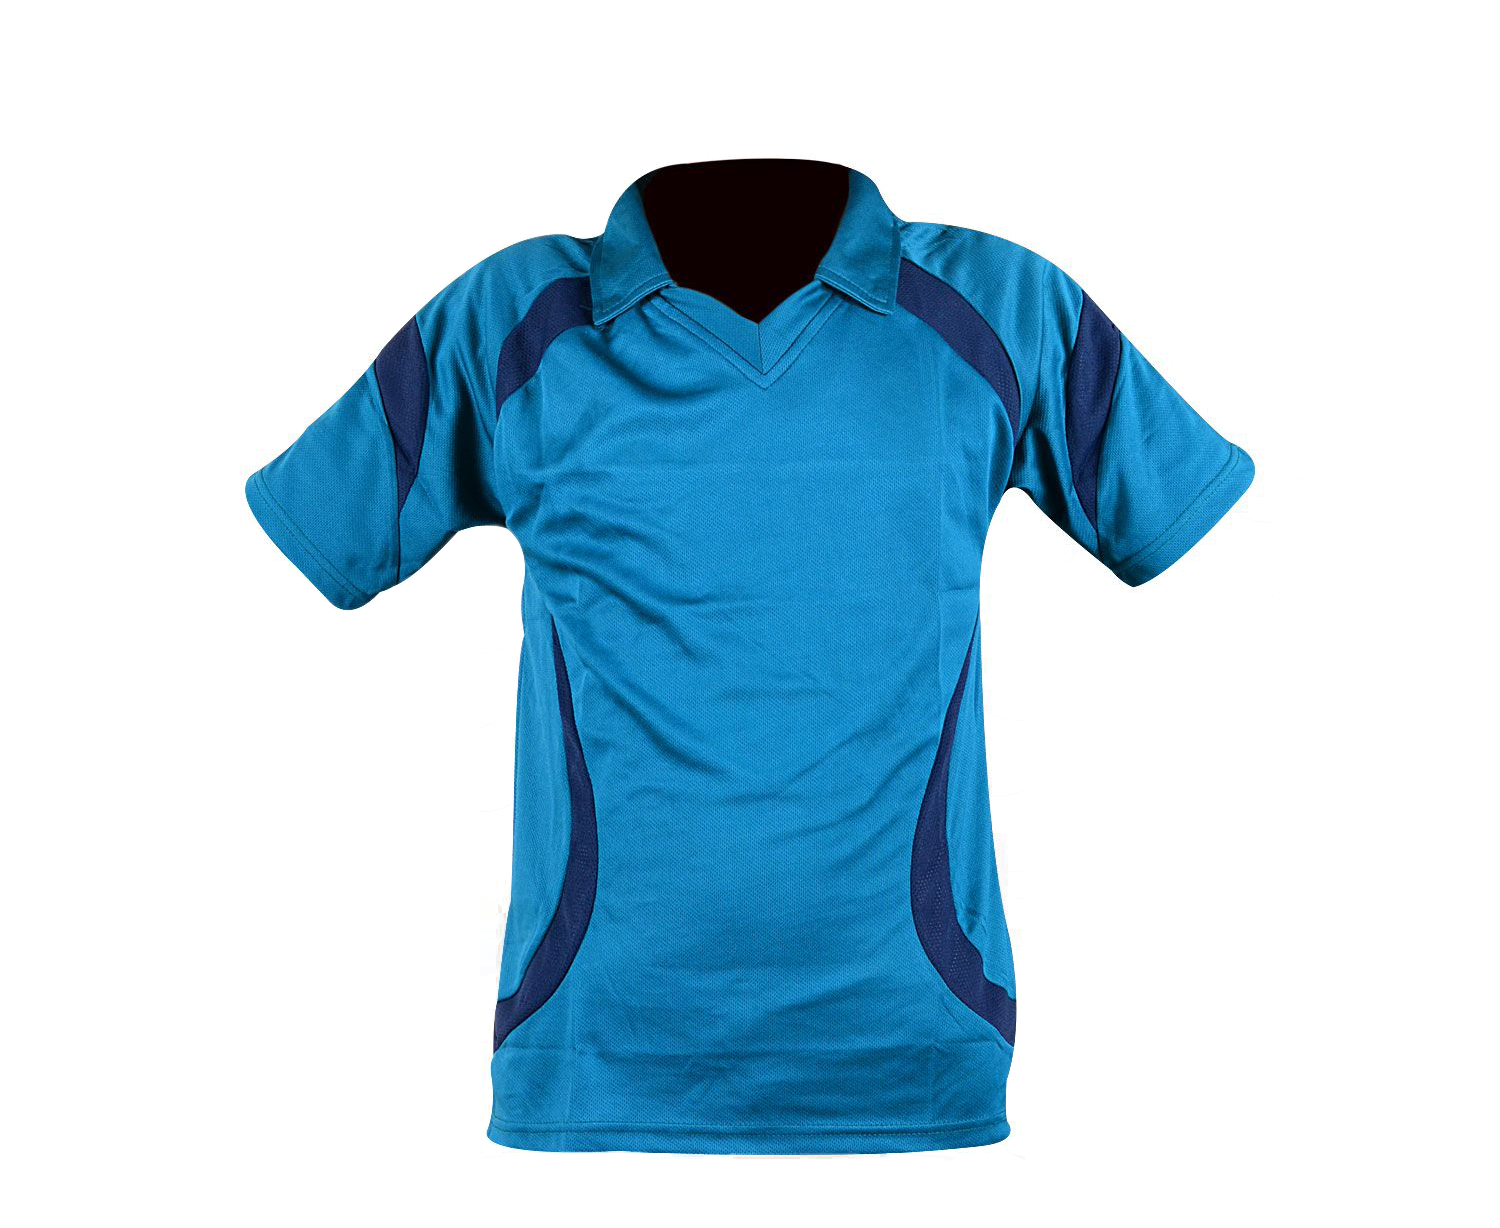 CA ODI Shirt Kit Blue